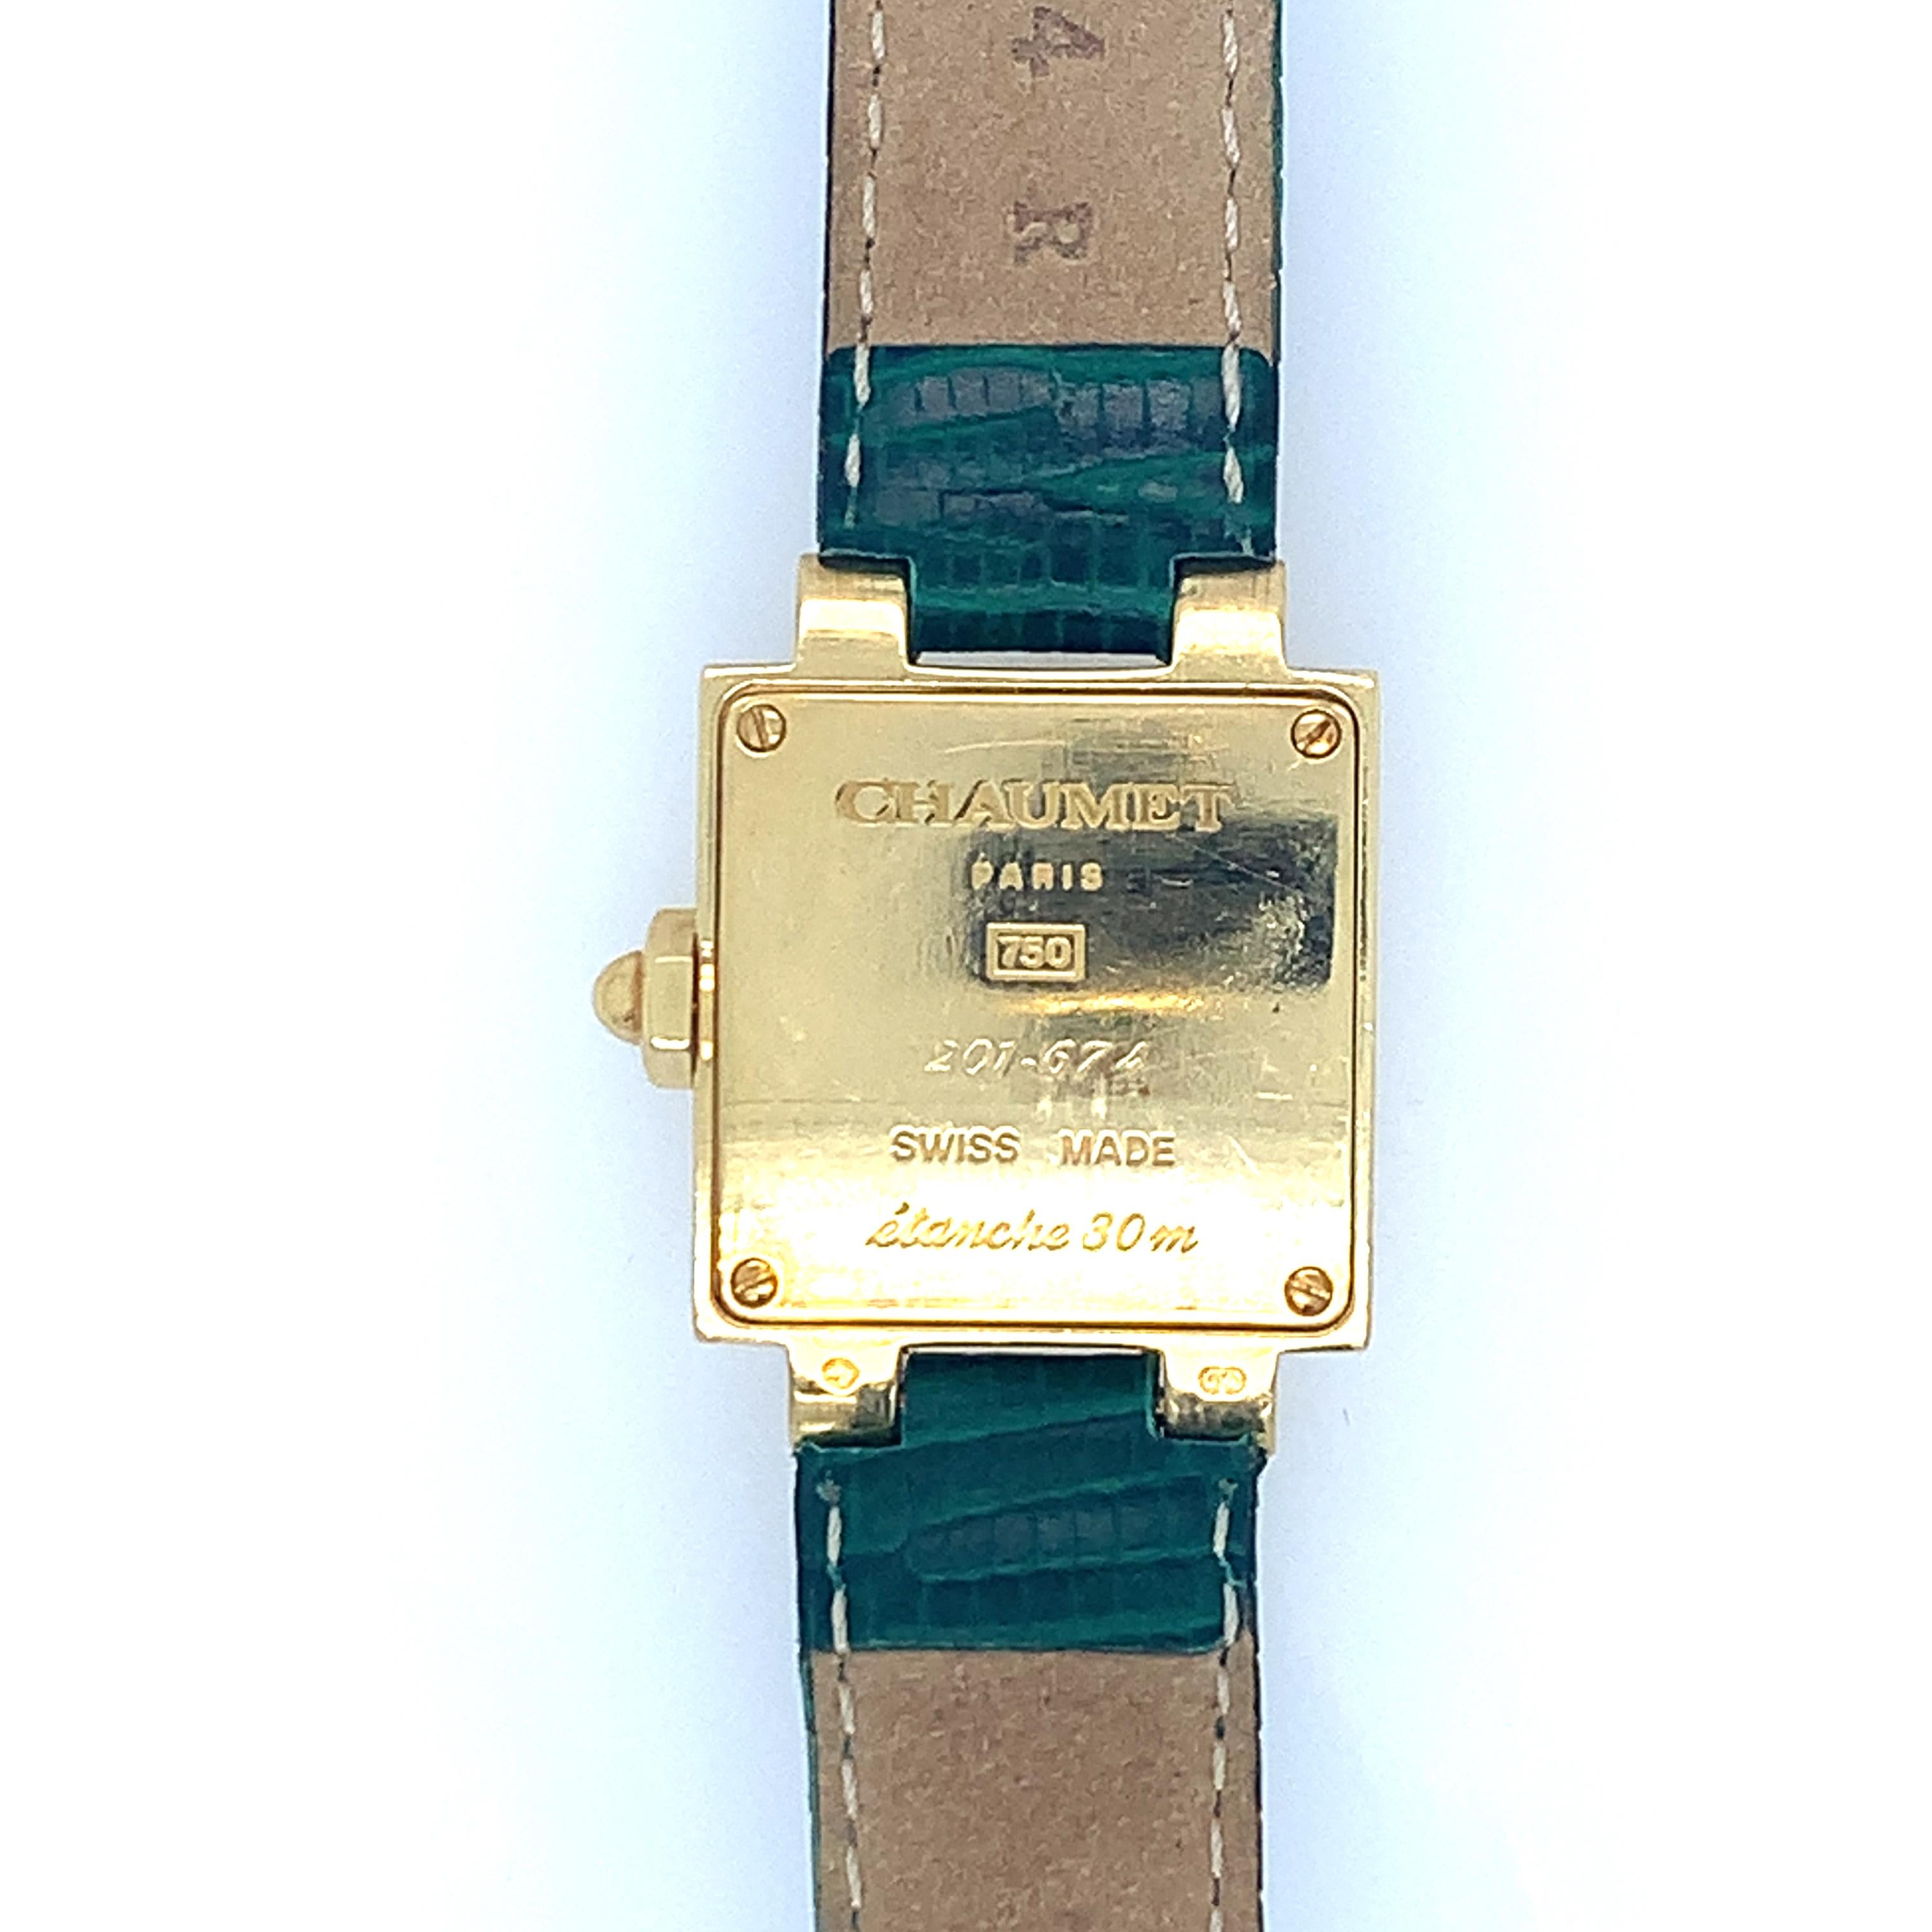 18k gold watch